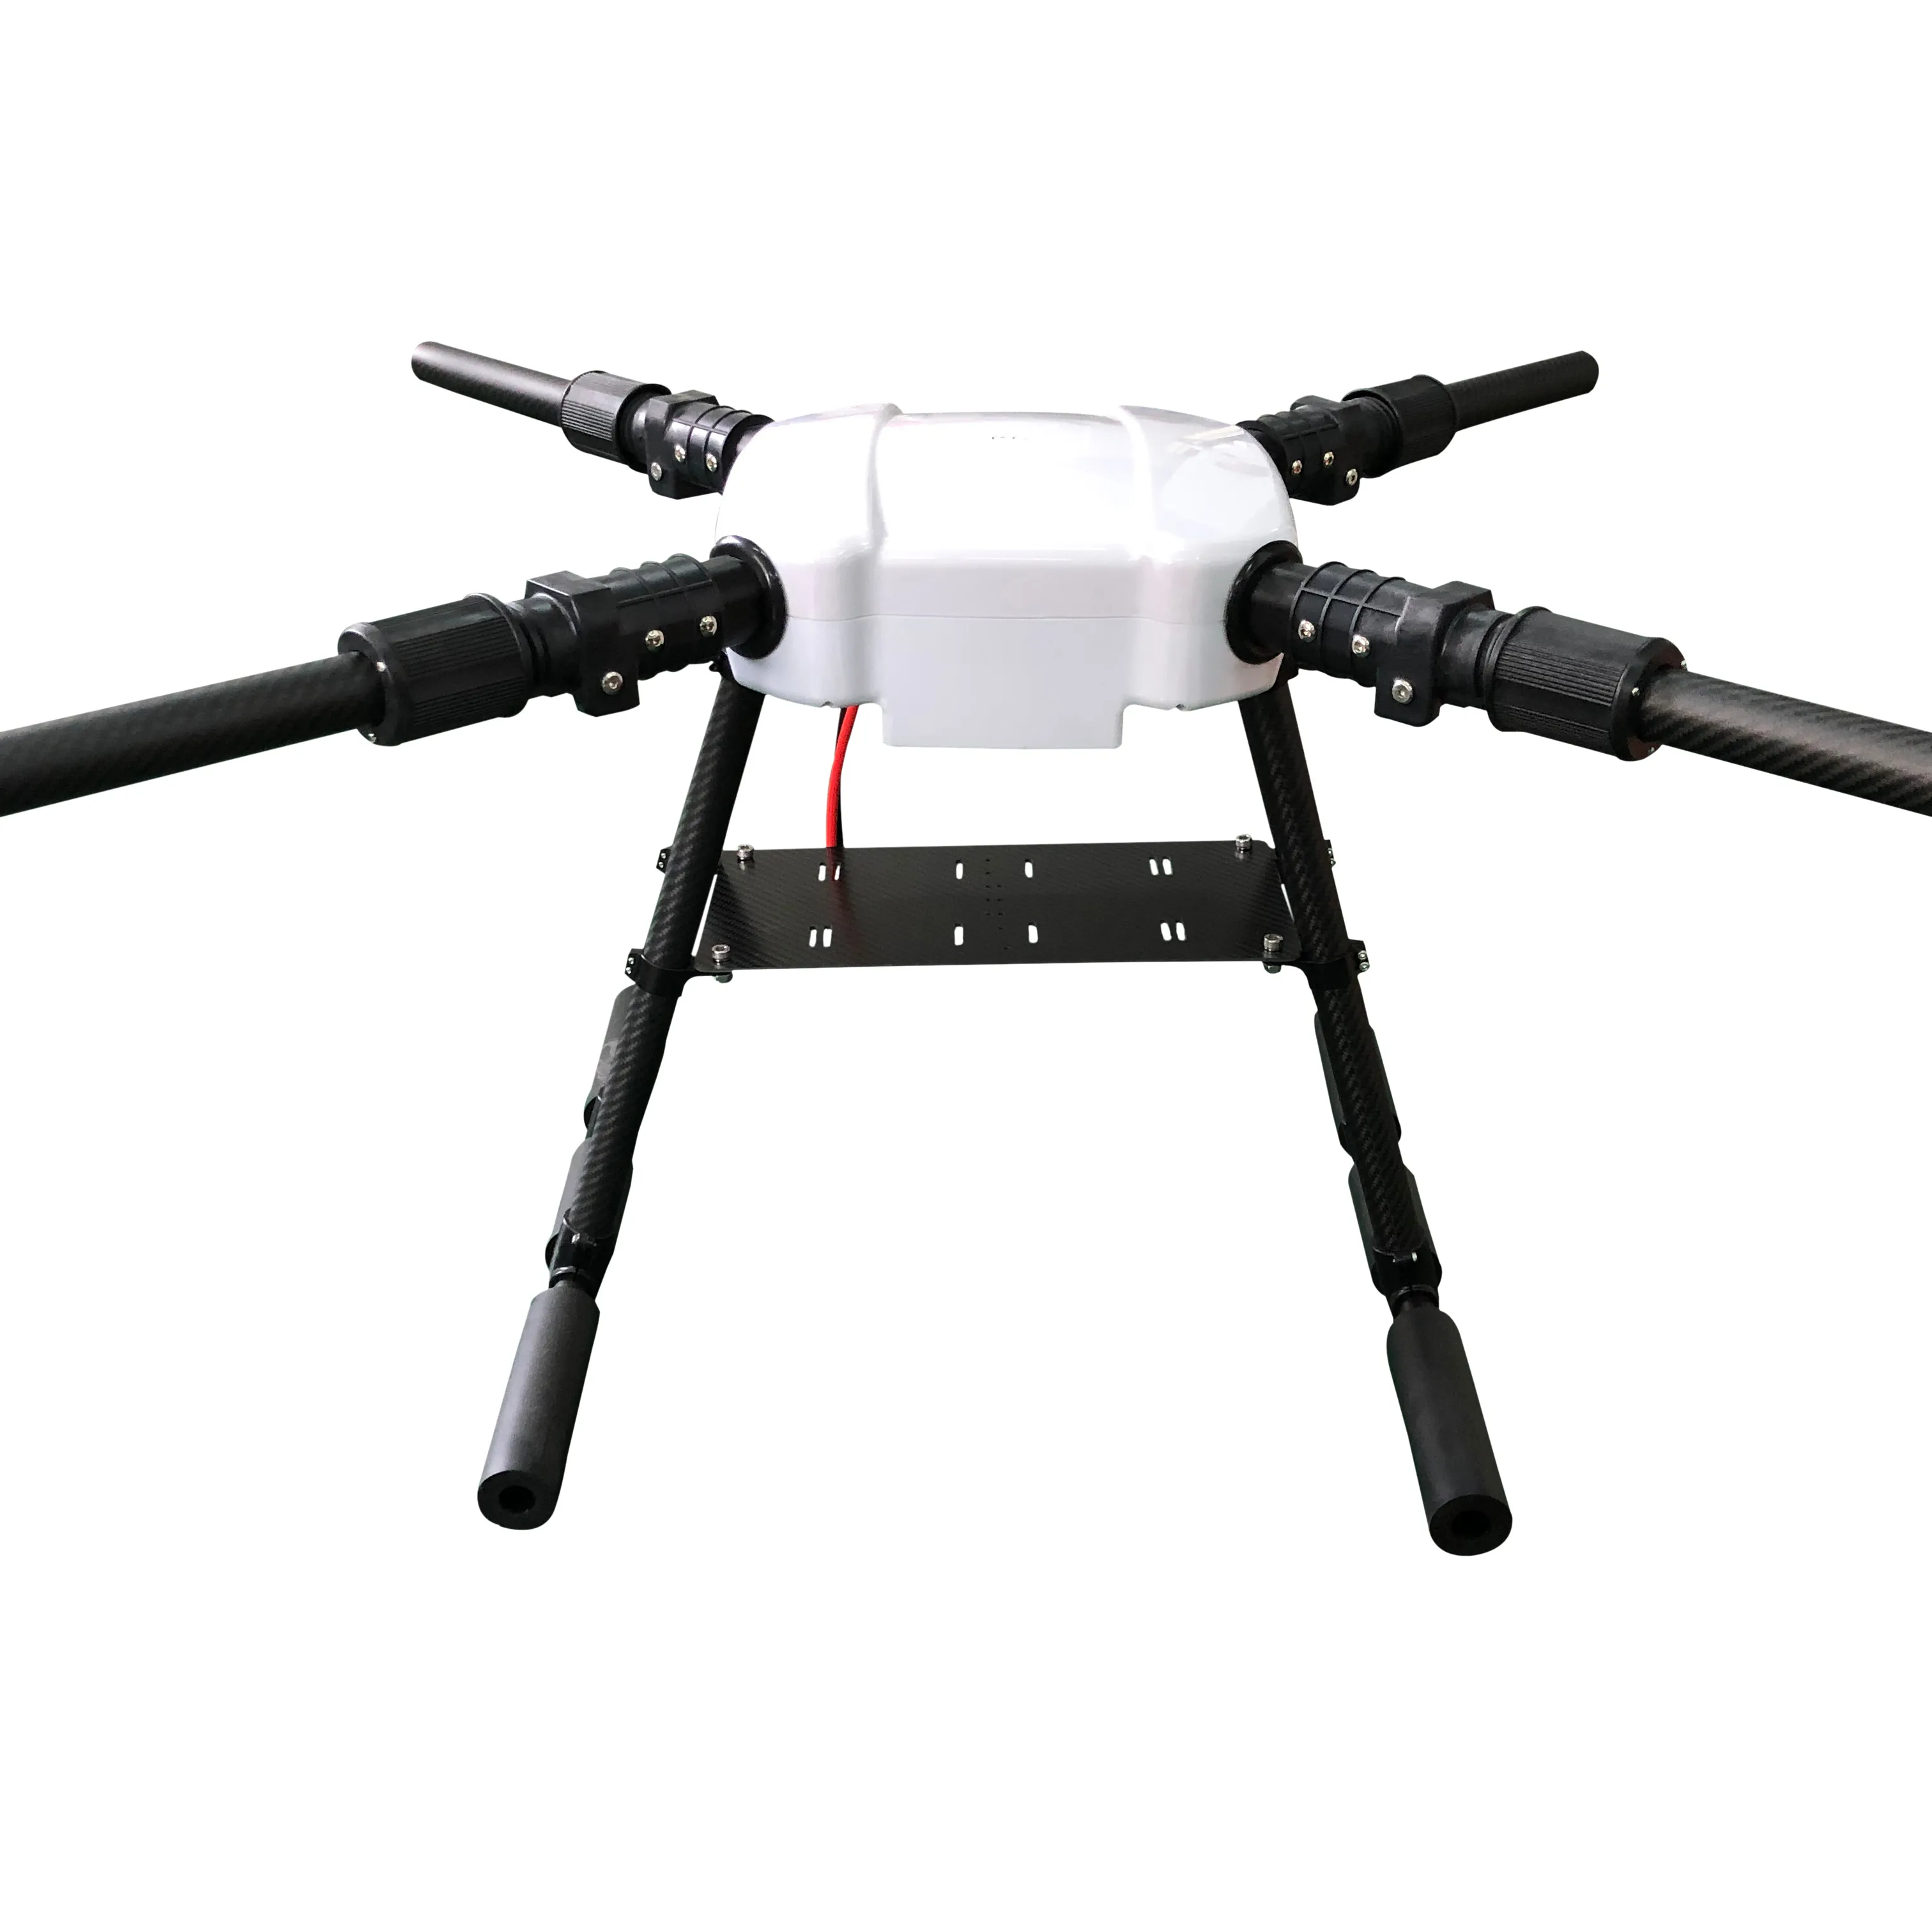 Marco de Dron de fibra de carbono, 4 ejes, 16 L, duradero, para agricultura, gran oferta de fábrica